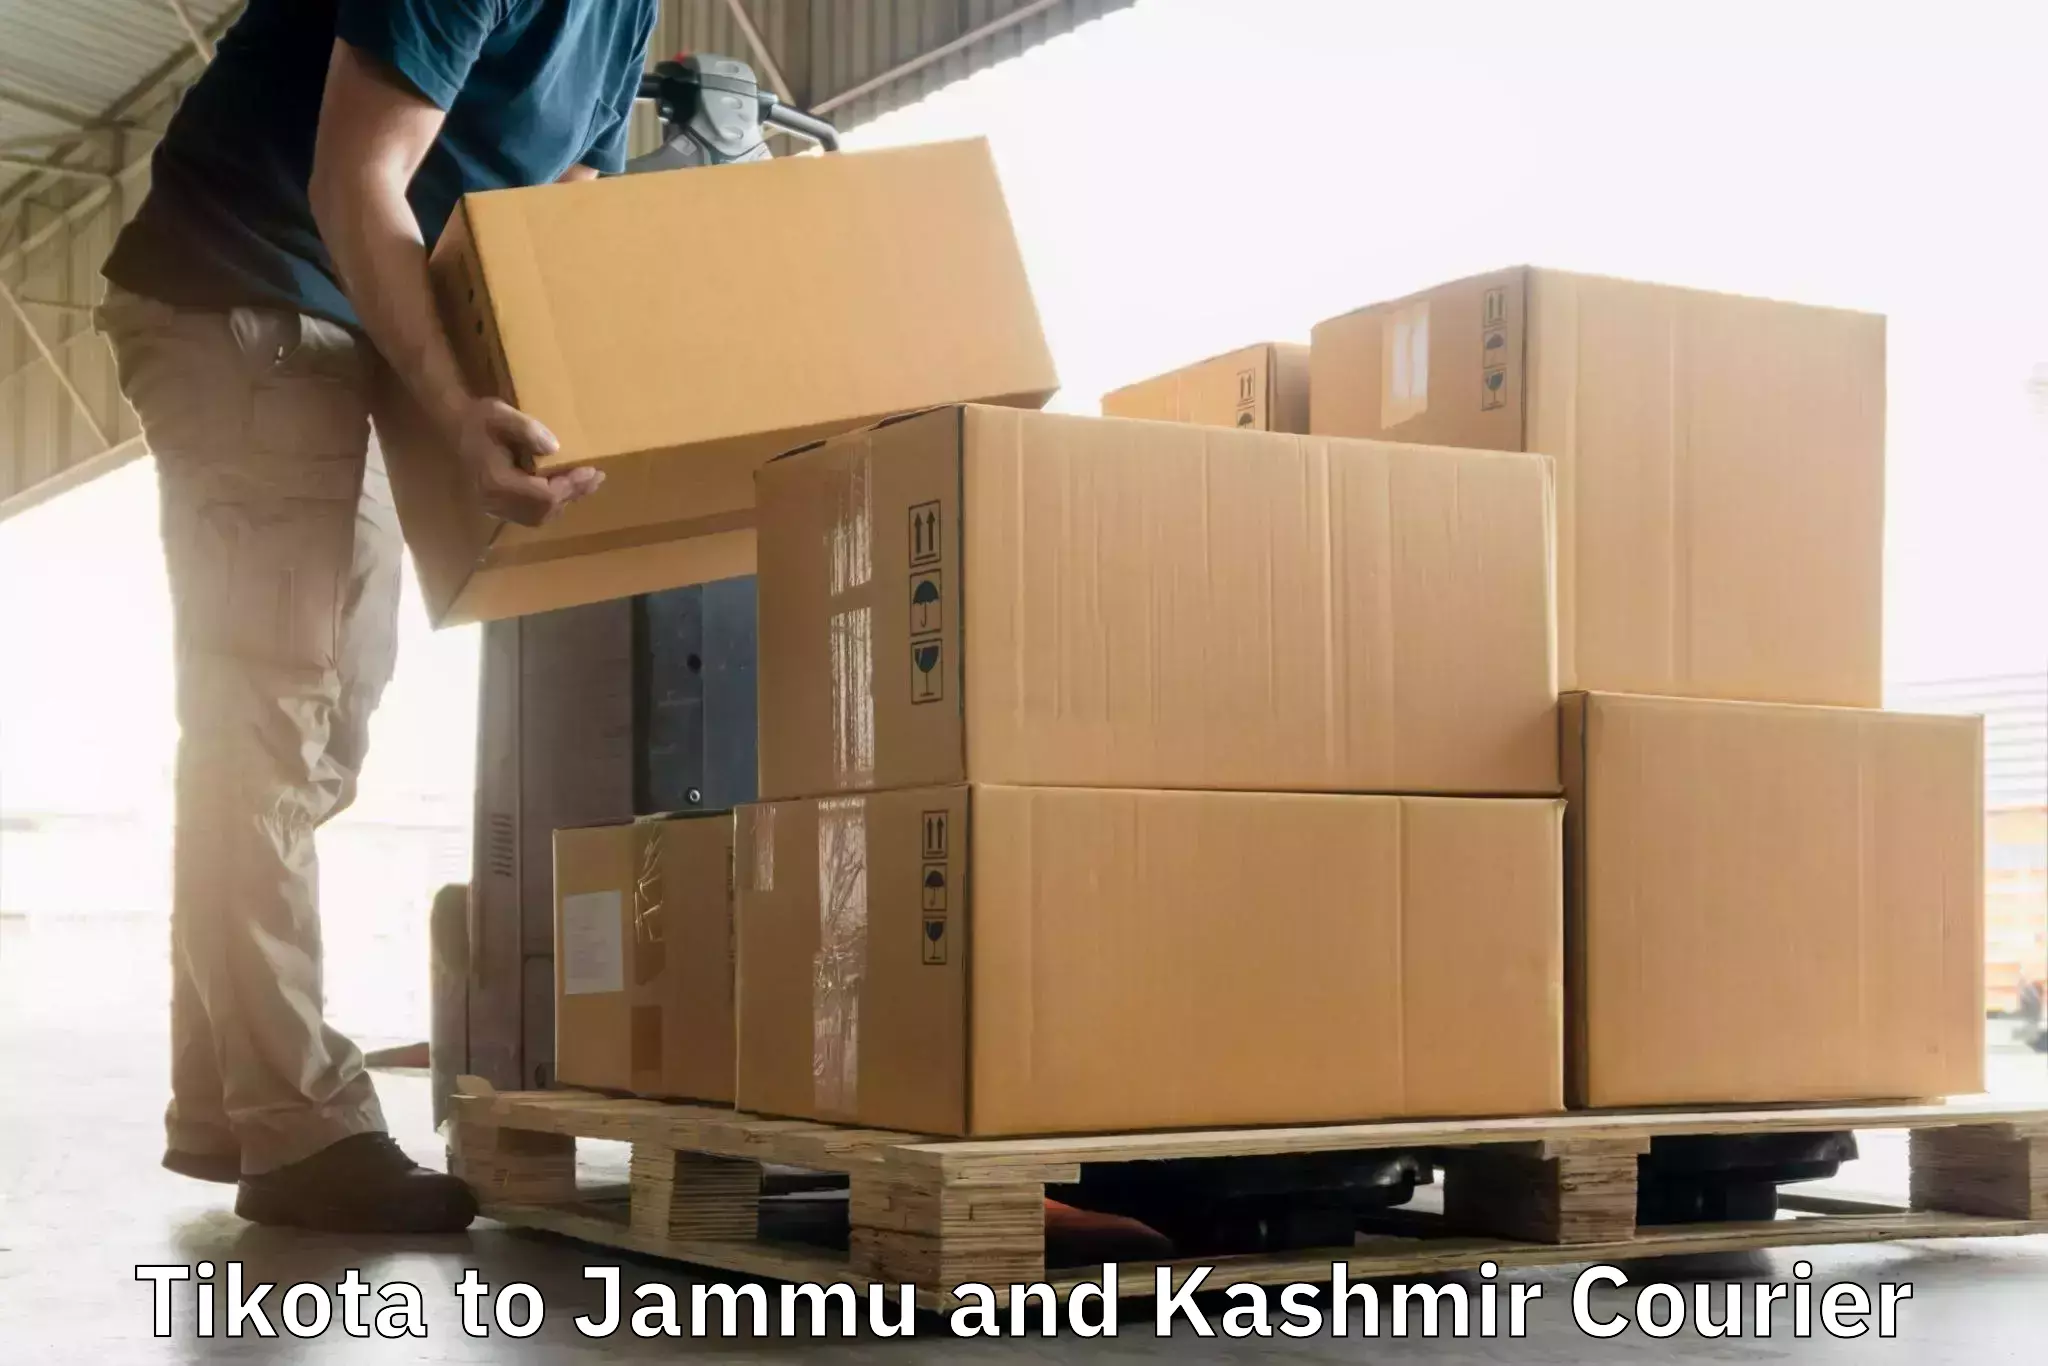 International courier rates Tikota to Jammu and Kashmir